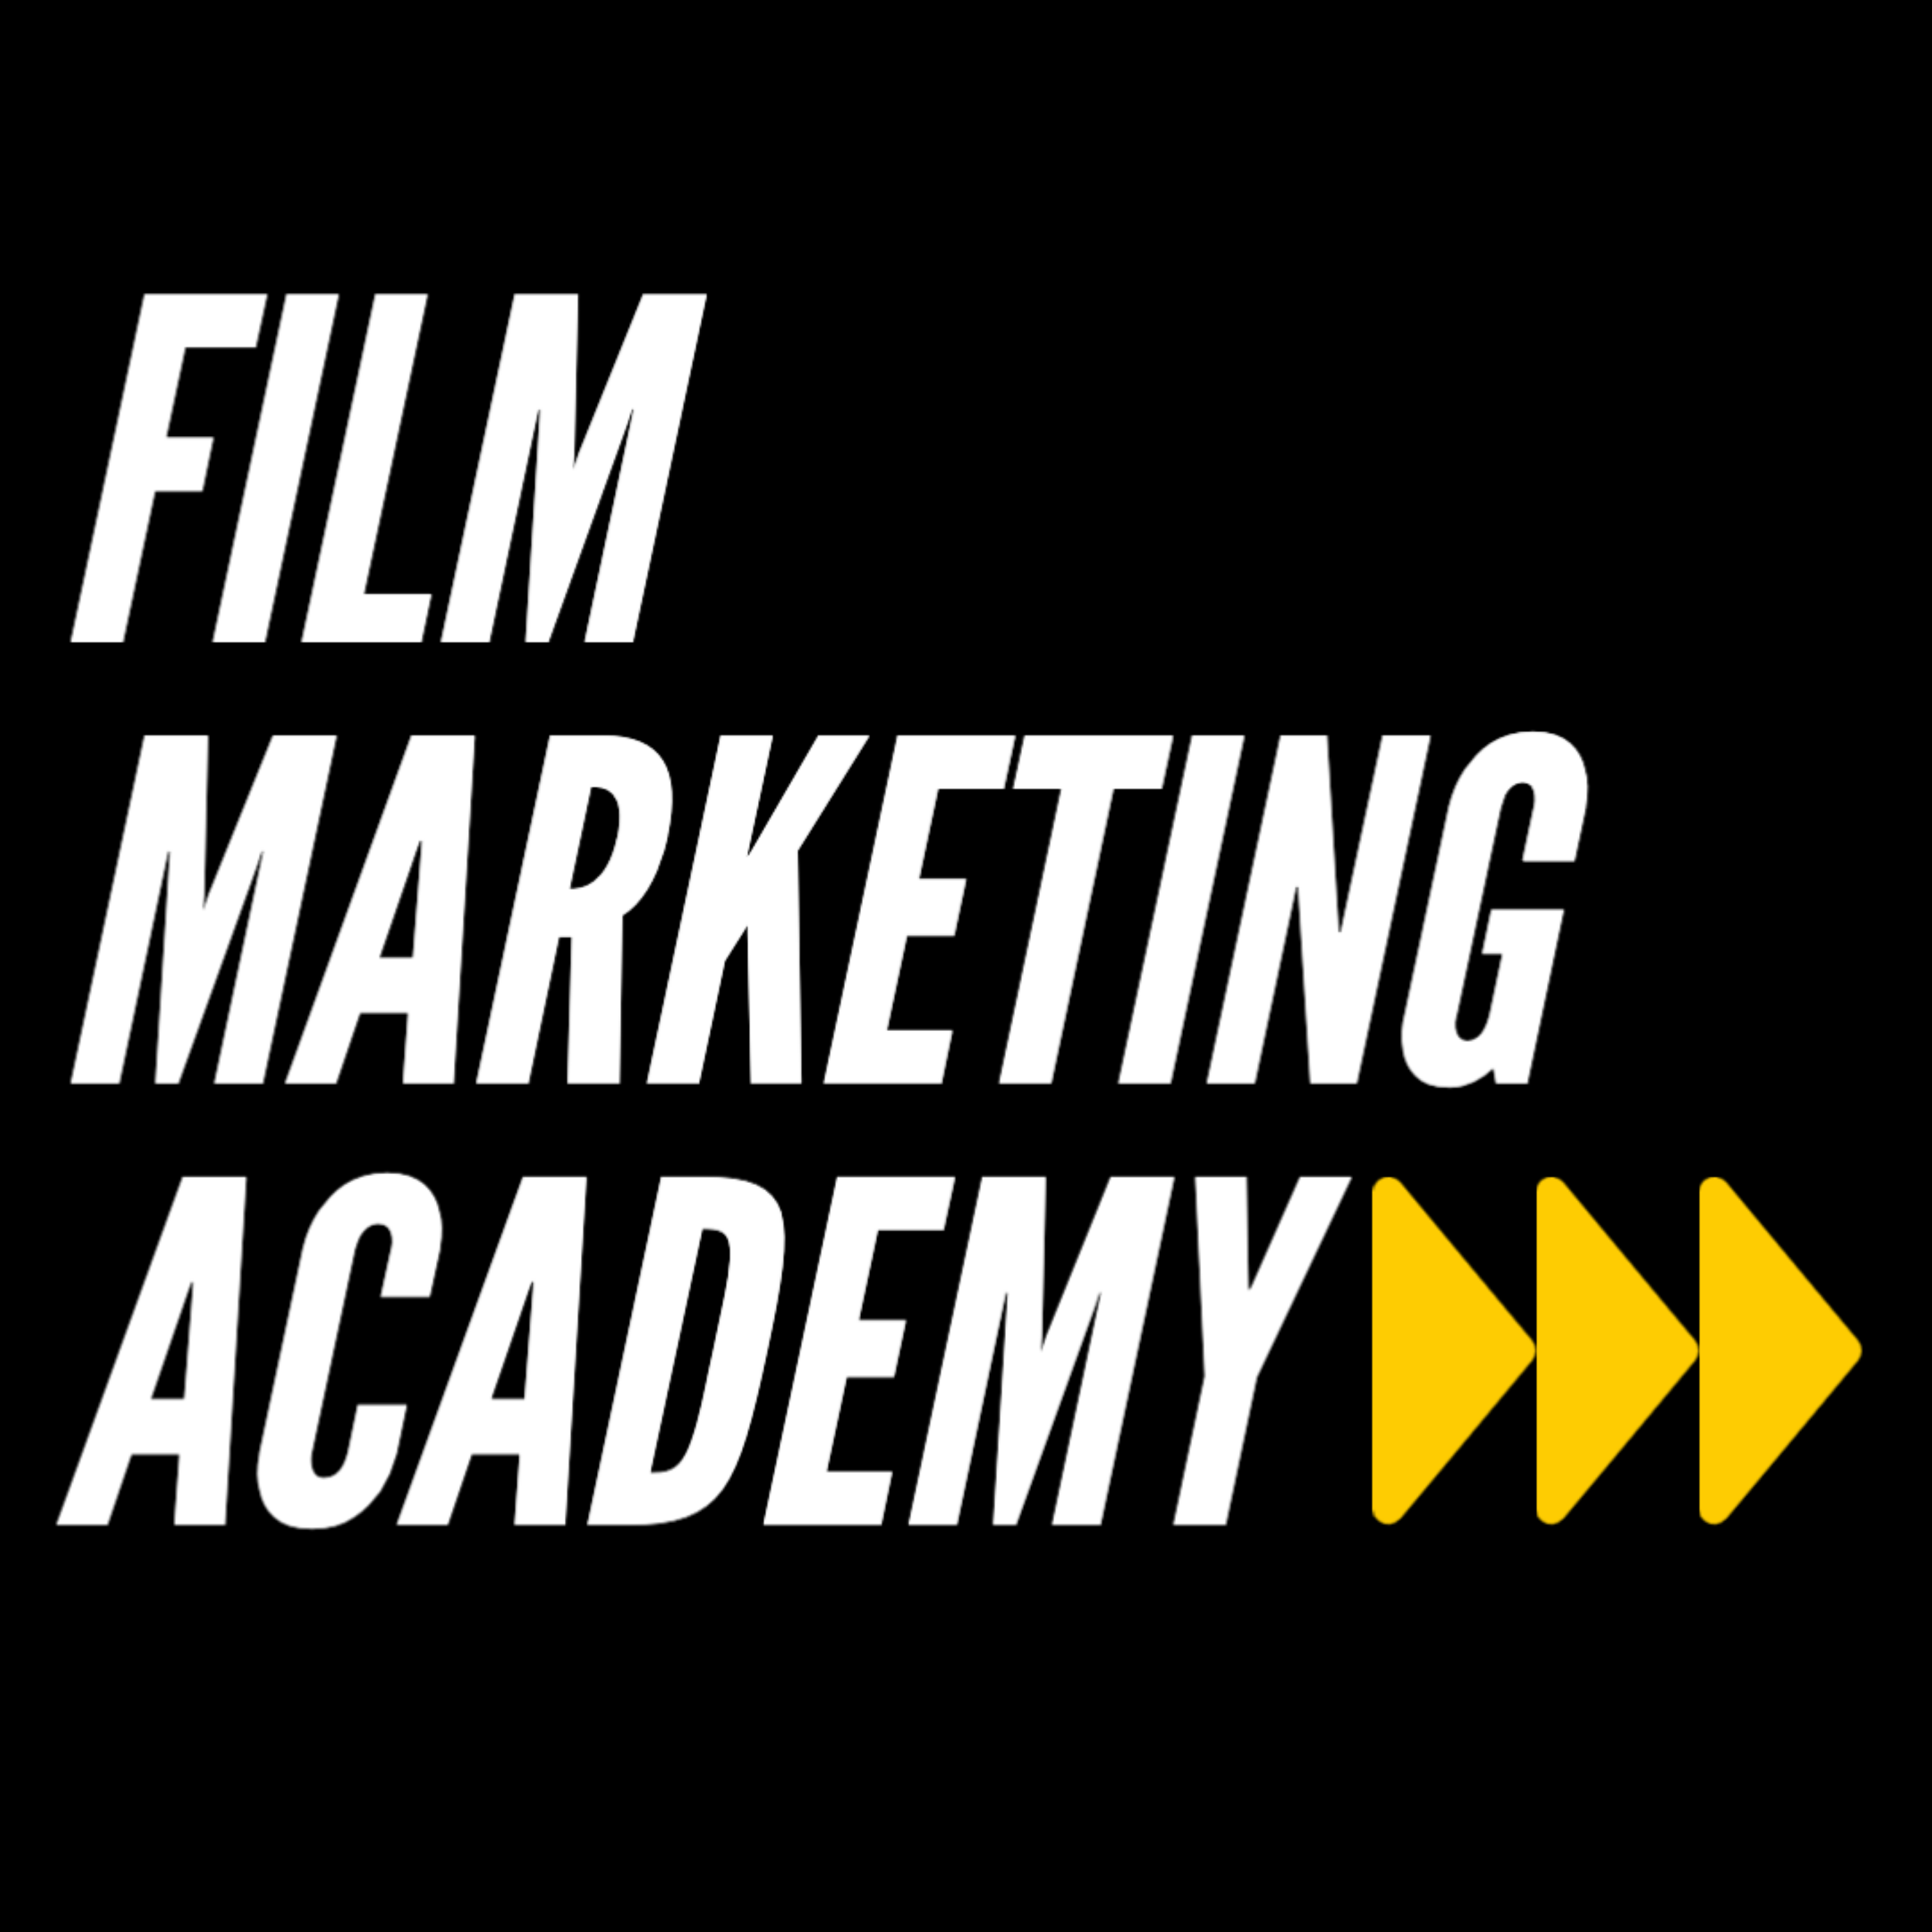 Show artwork for Film Marketing Academy Podcast